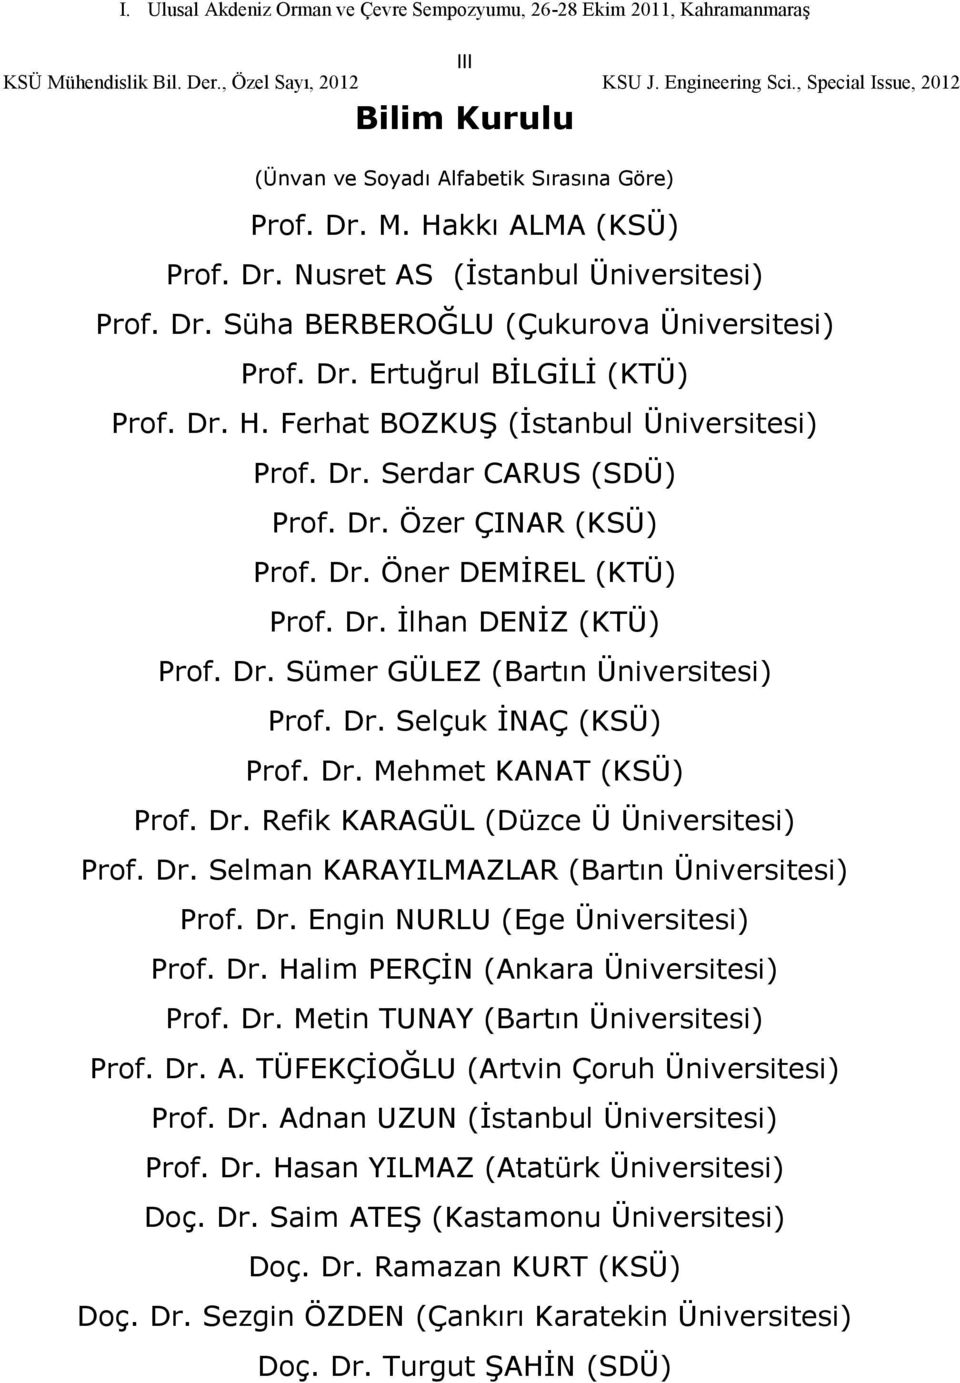 Dr. Selçuk İNAÇ (KSÜ) Prof. Dr. Mehmet KANAT (KSÜ) Prof. Dr. Refik KARAGÜL (Düzce Ü Üniversitesi) Prof. Dr. Selman KARAYILMAZLAR (Bartın Üniversitesi) Prof. Dr. Engin NURLU (Ege Üniversitesi) Prof.